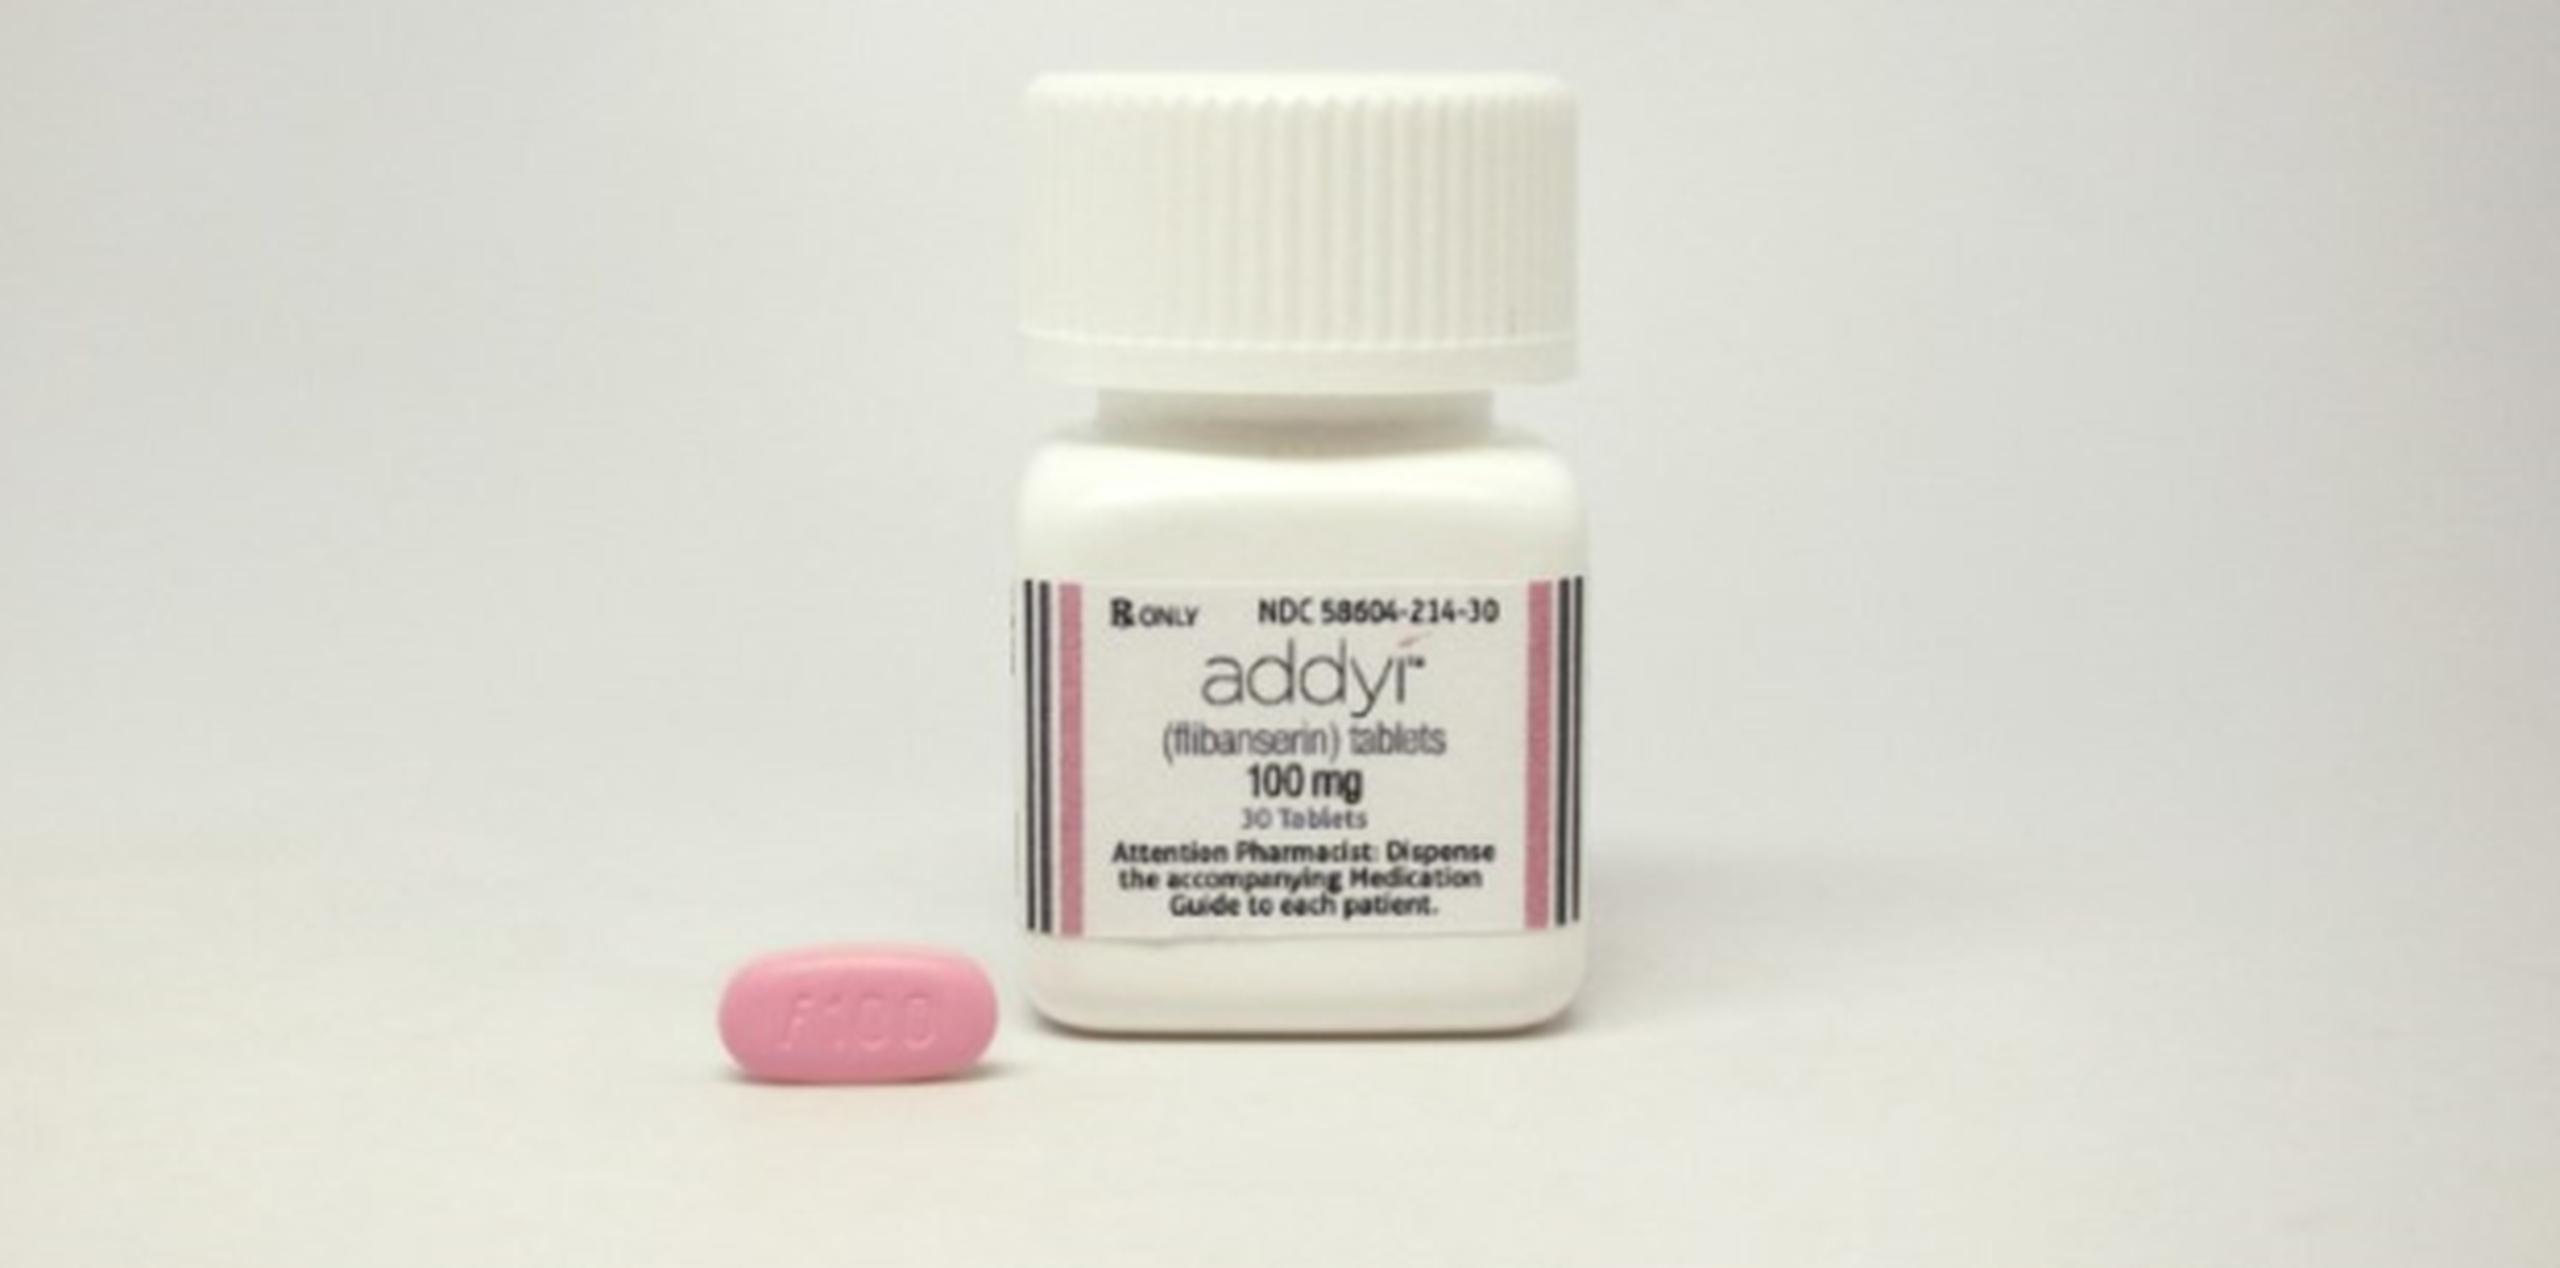 Se prevé que las ventas se verán afectadas por las advertencias que acompañarán a la píldora y las medidas de seguridad impuestas por la FDA. (Archivo)